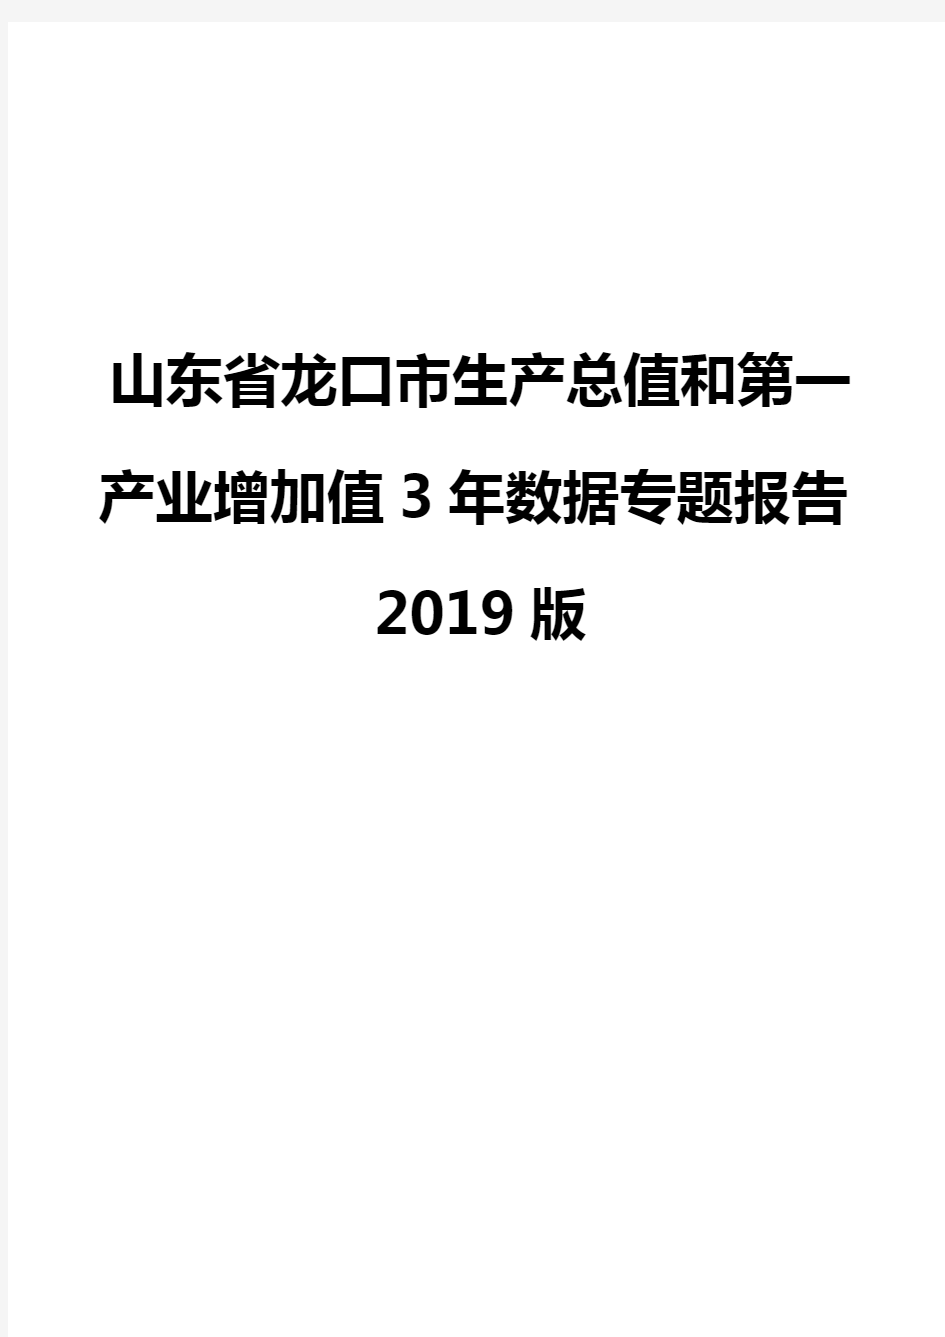 山东省龙口市生产总值和第一产业增加值3年数据专题报告2019版